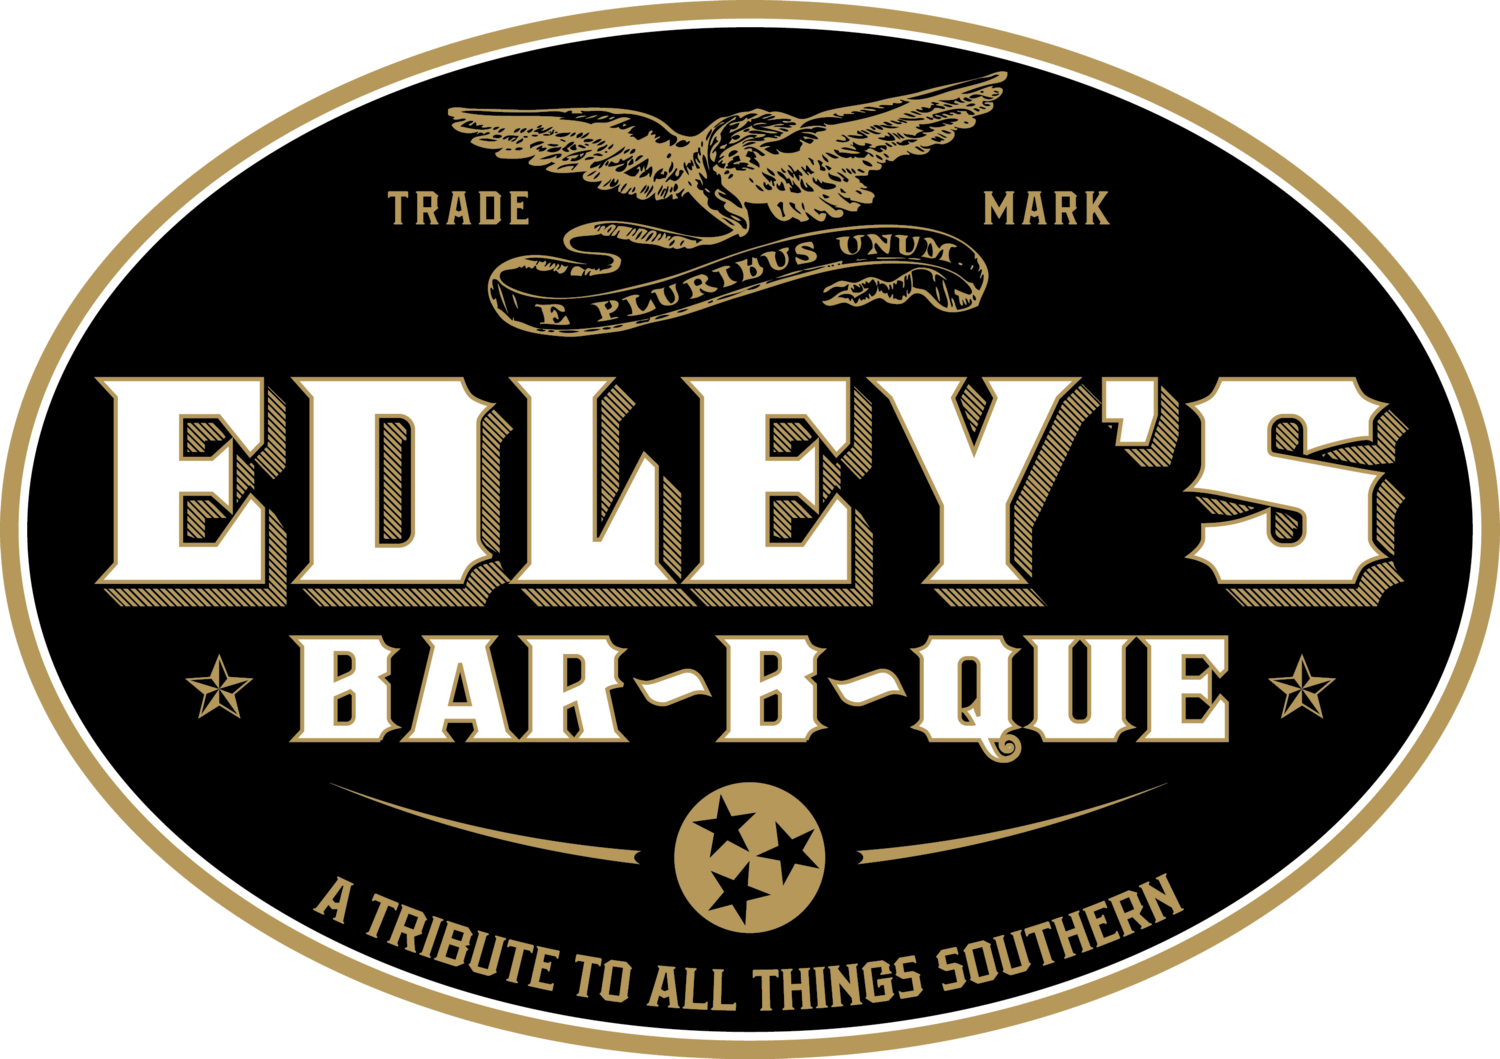 Edleys Logo